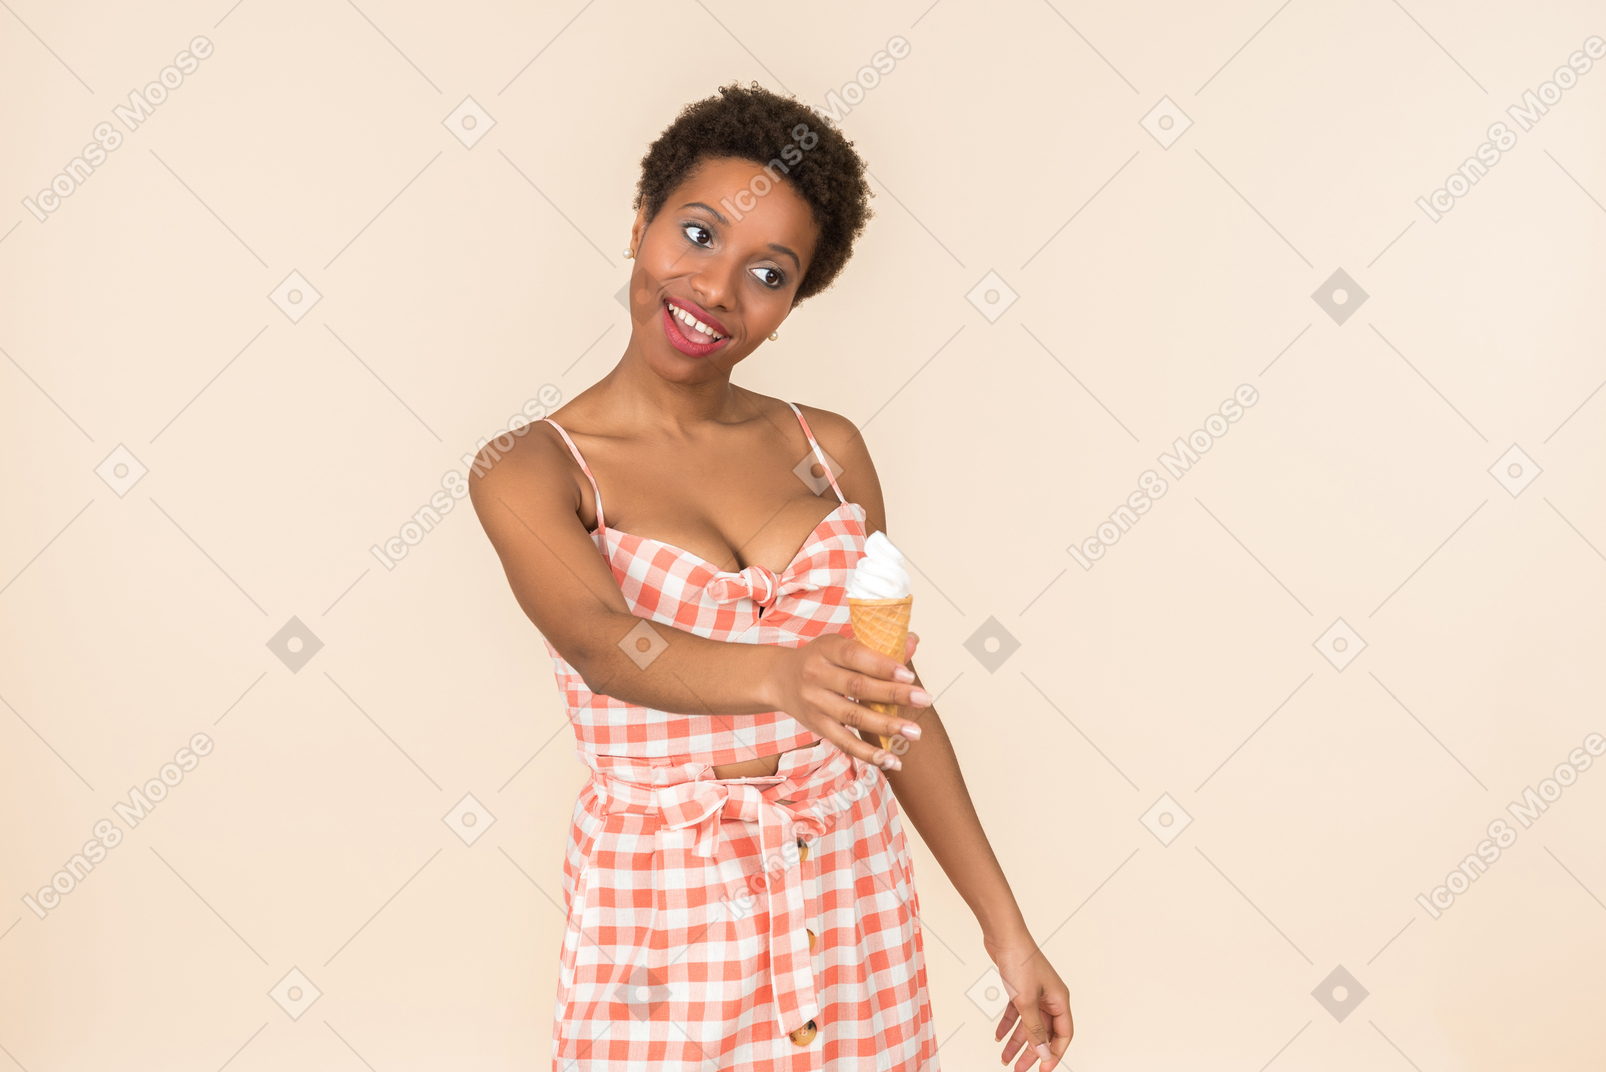 Jeune femme noire aux cheveux courts dans un haut à carreaux et une jupe, posant avec un cornet de crème glacée